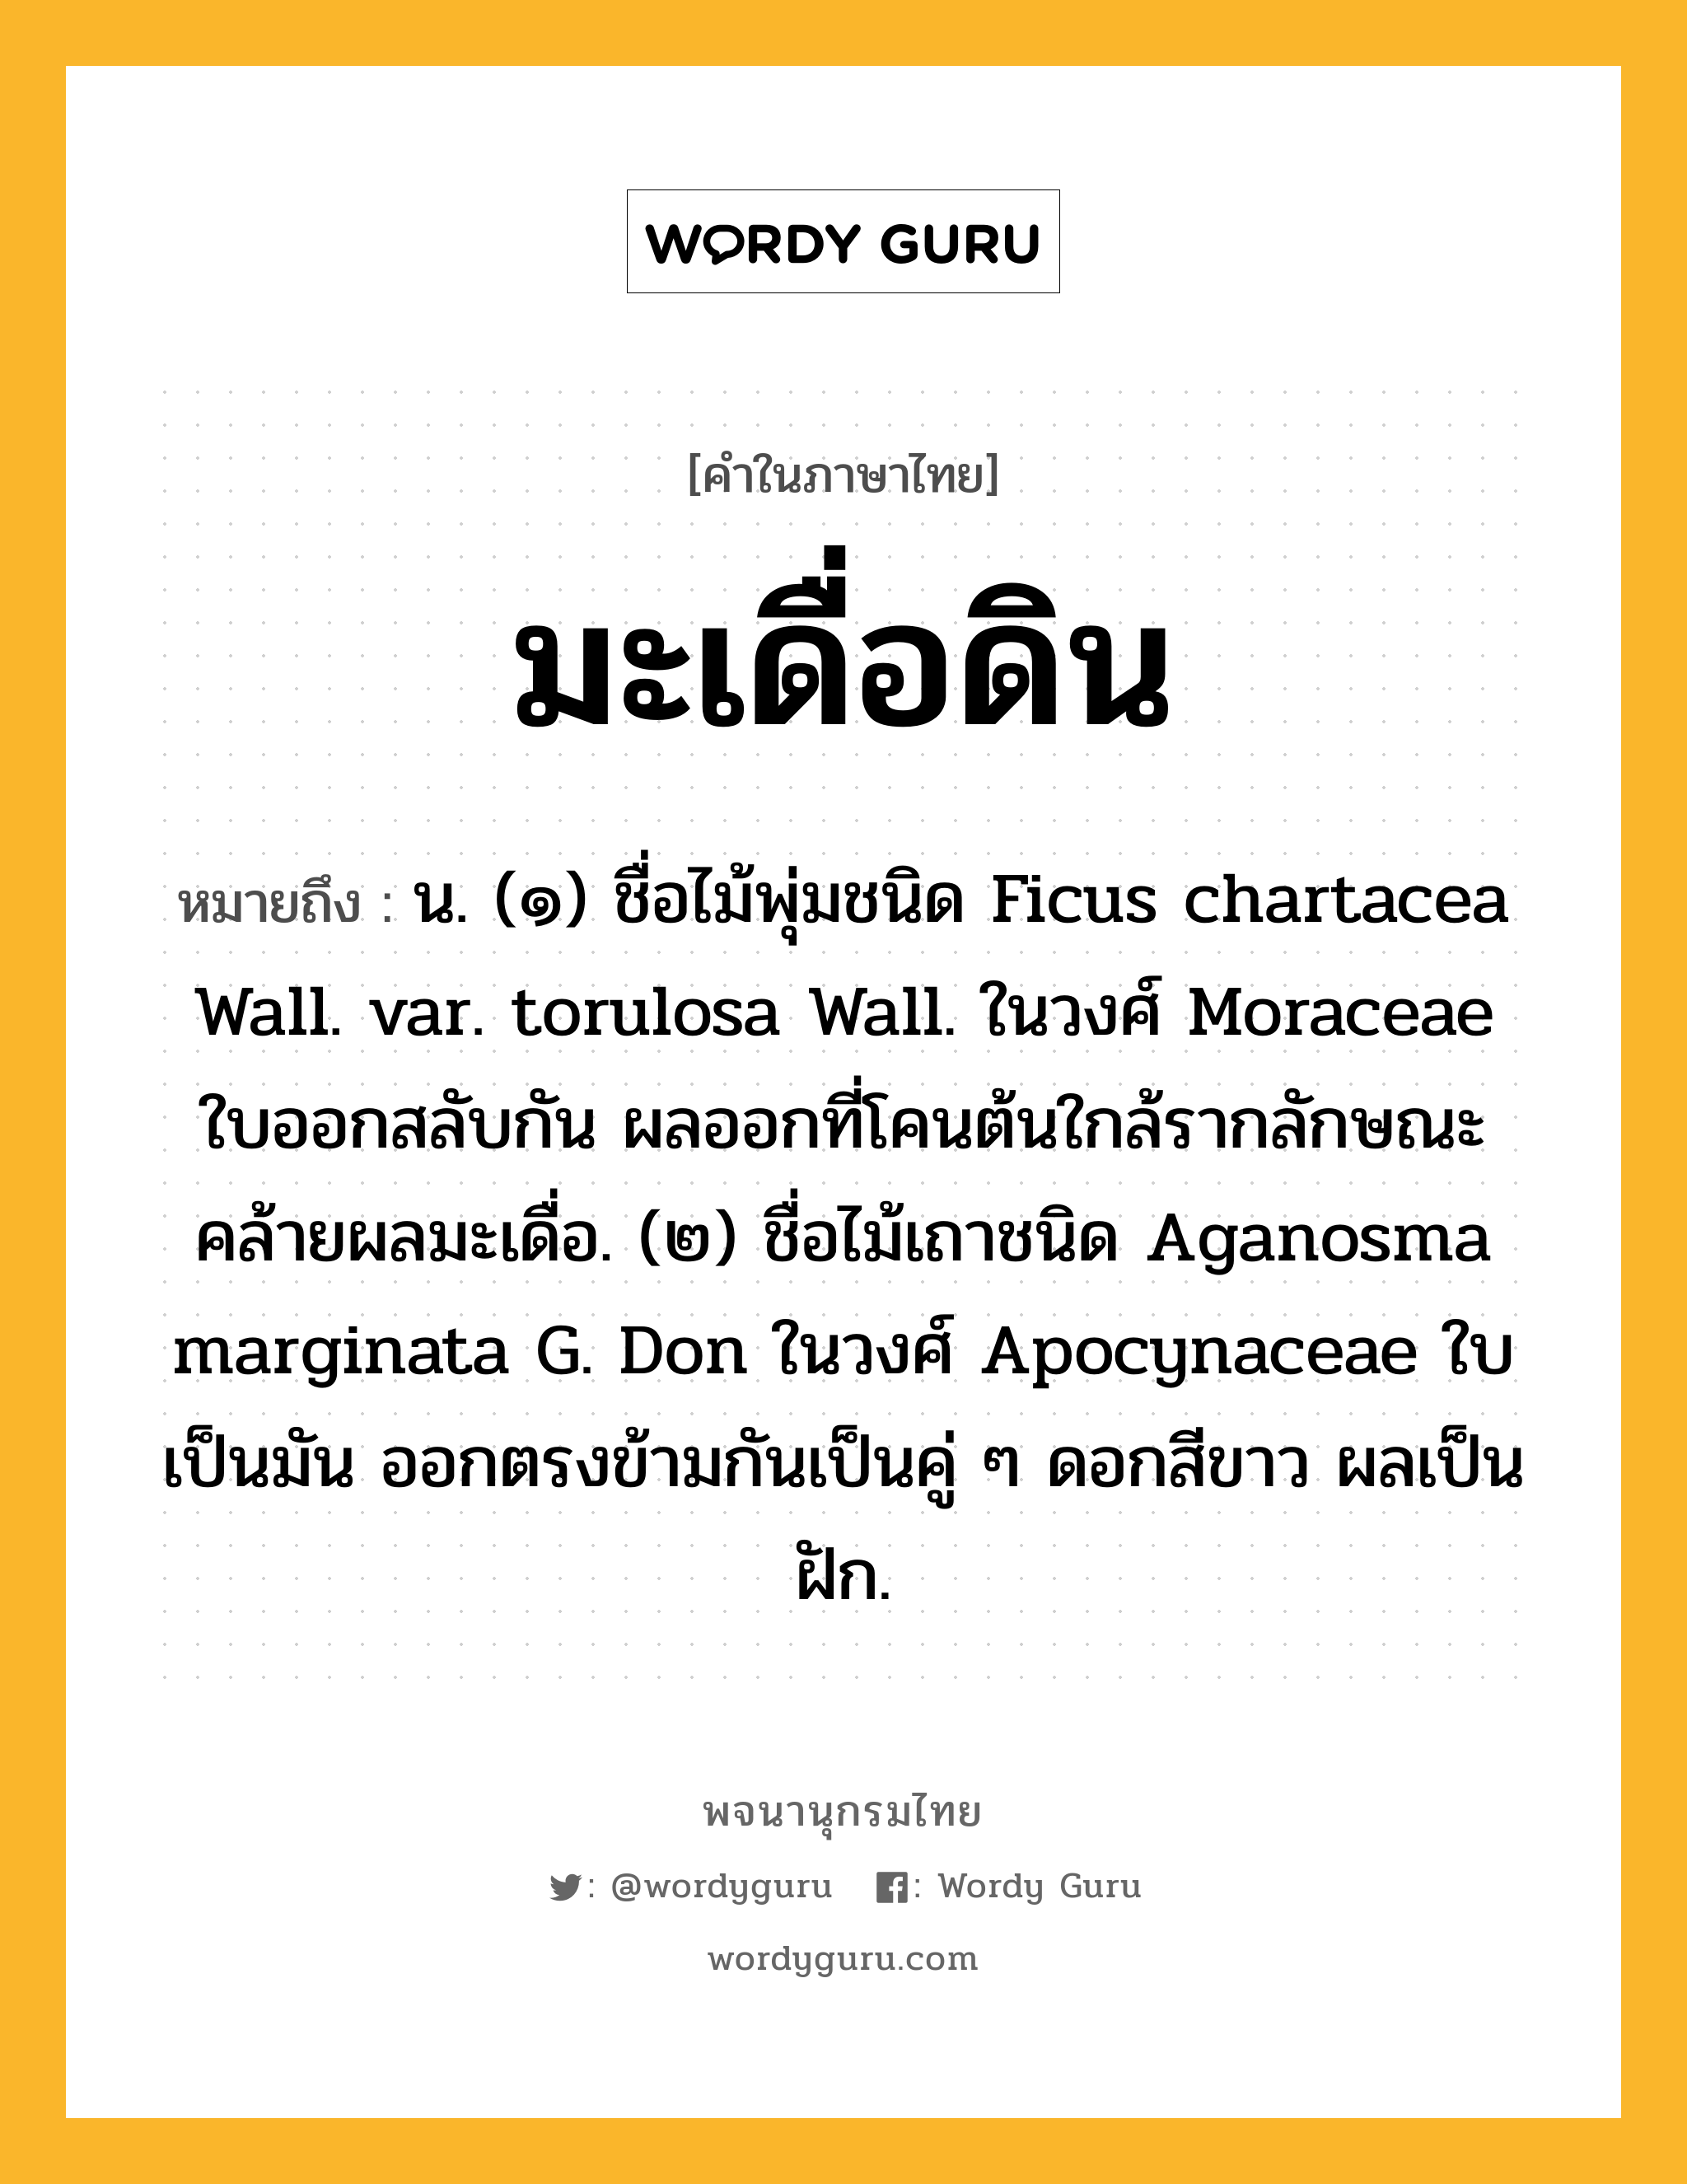 มะเดื่อดิน หมายถึงอะไร?, คำในภาษาไทย มะเดื่อดิน หมายถึง น. (๑) ชื่อไม้พุ่มชนิด Ficus chartacea Wall. var. torulosa Wall. ในวงศ์ Moraceae ใบออกสลับกัน ผลออกที่โคนต้นใกล้รากลักษณะคล้ายผลมะเดื่อ. (๒) ชื่อไม้เถาชนิด Aganosma marginata G. Don ในวงศ์ Apocynaceae ใบเป็นมัน ออกตรงข้ามกันเป็นคู่ ๆ ดอกสีขาว ผลเป็นฝัก.